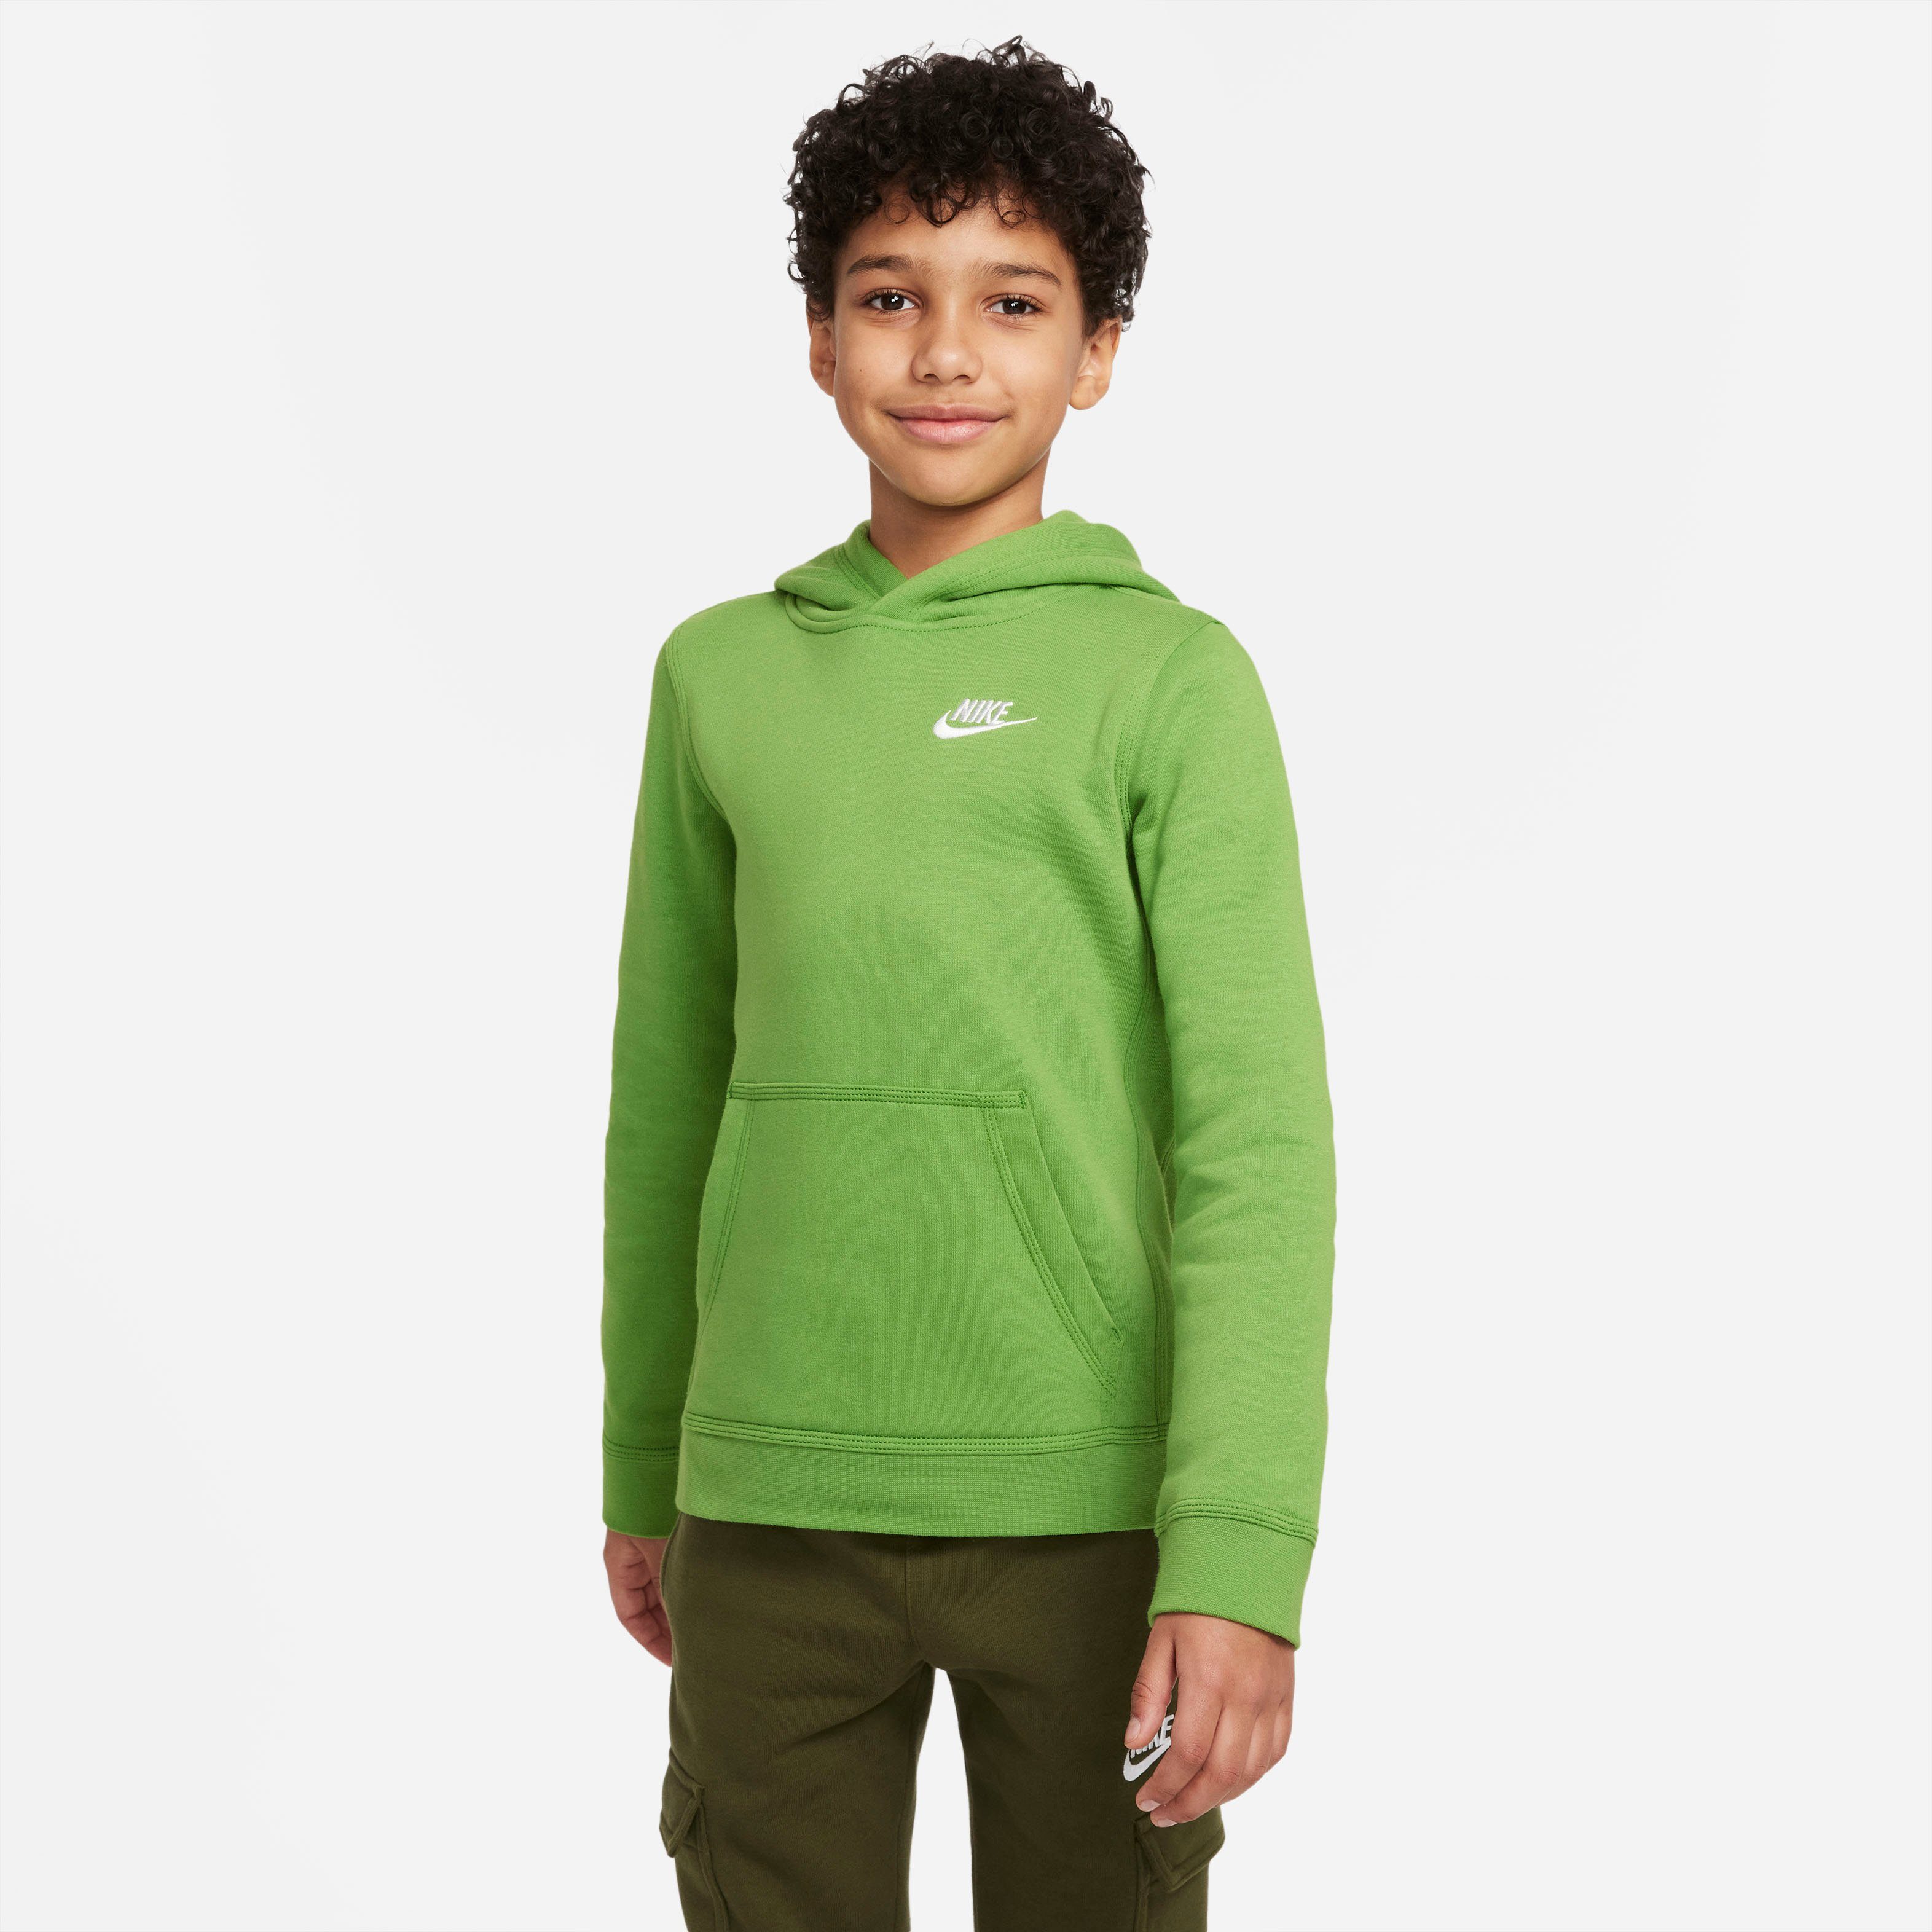 Jungen Sweatshirts online kaufen | OTTO